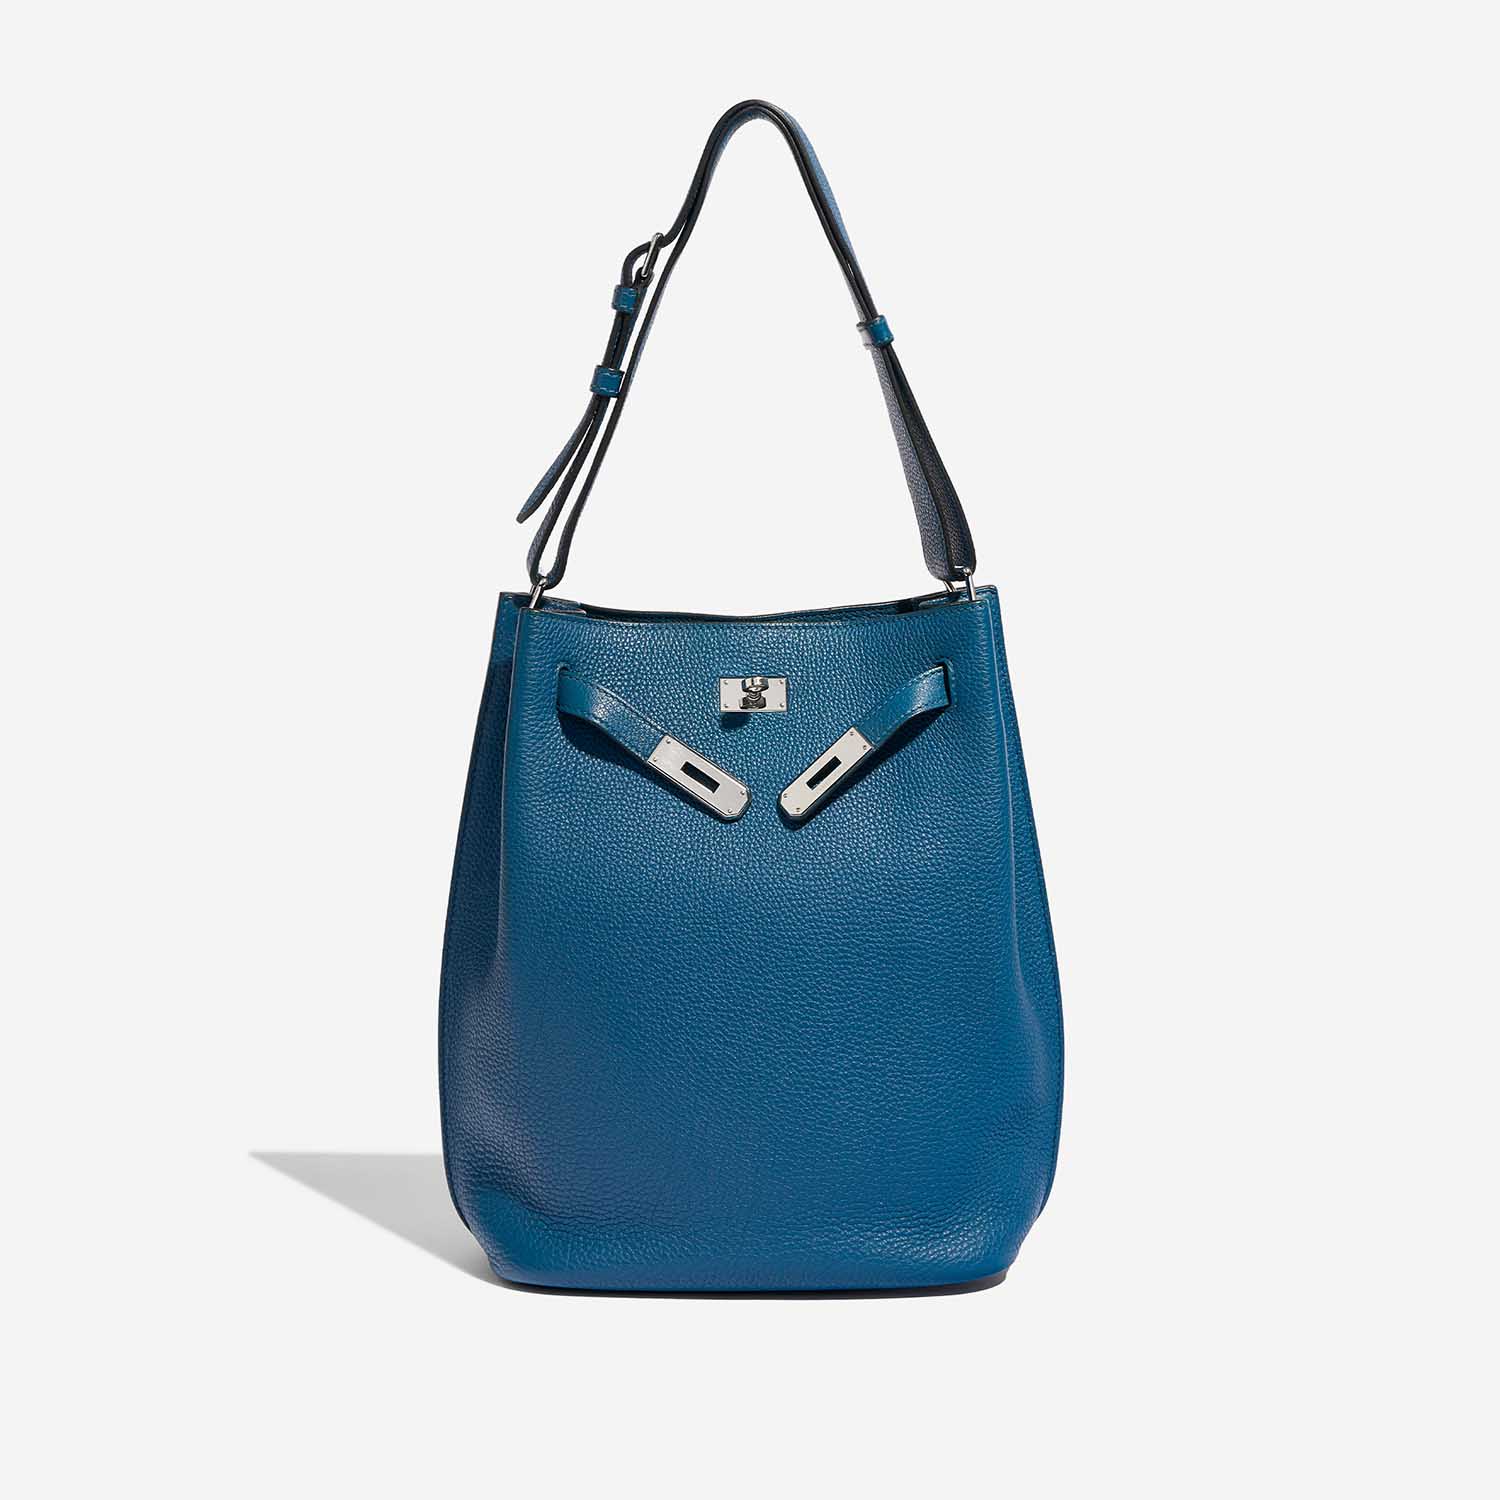 Pre-owned Hermès Tasche So Kelly 26 Togo Cobalt Blue Front Open | Verkaufen Sie Ihre Designer-Tasche auf Saclab.com